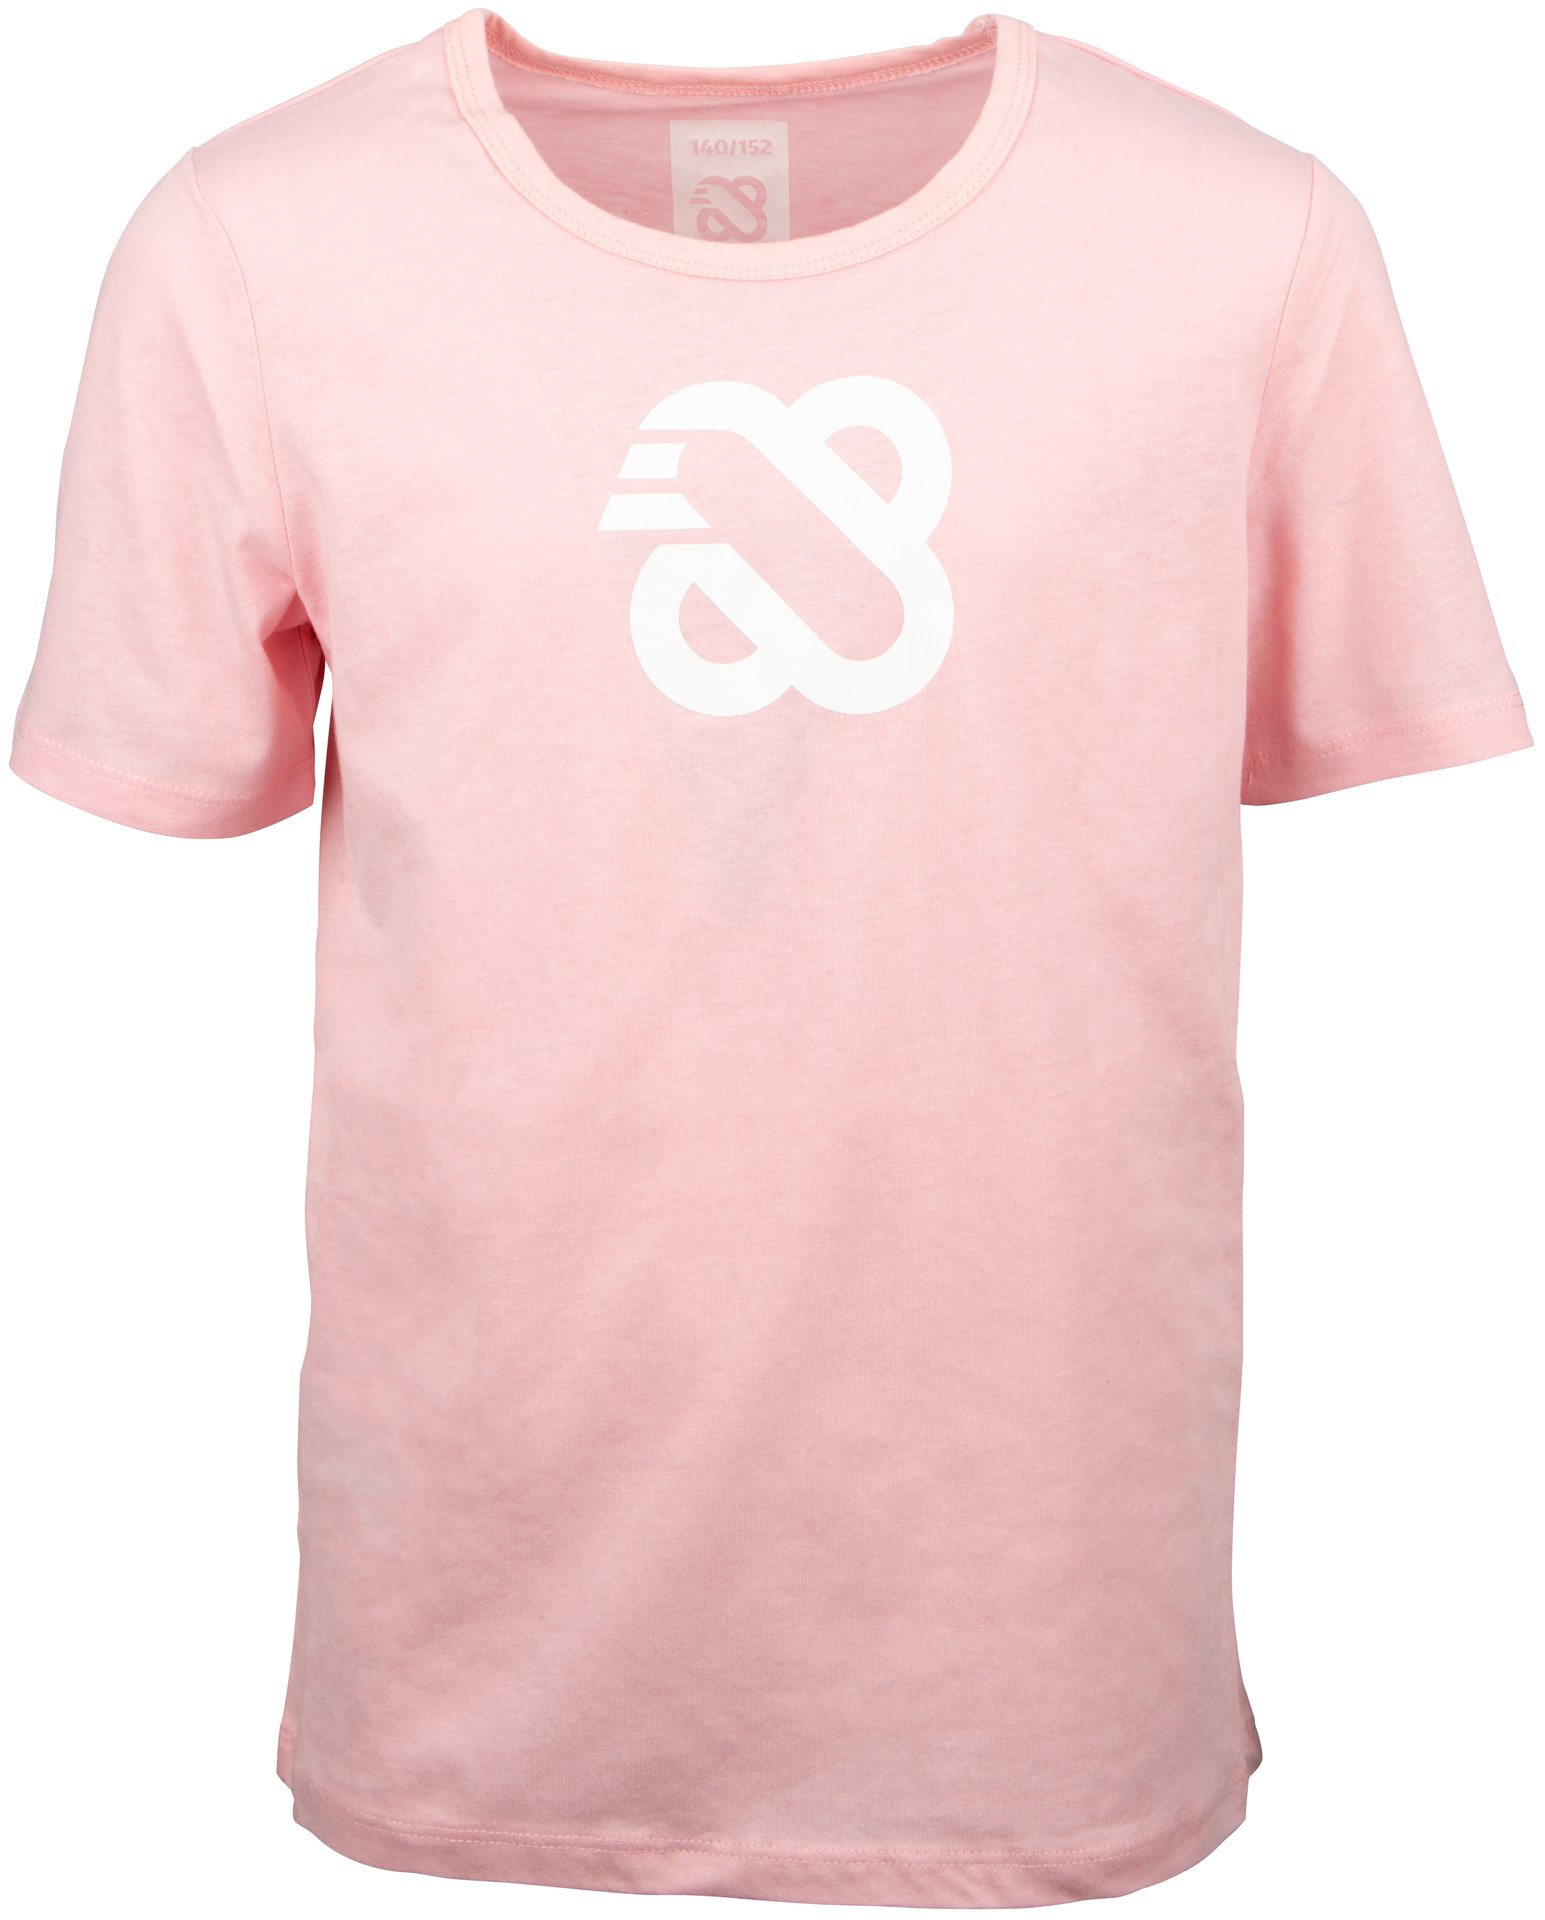 T-Shirt Jr - Emblem Pink